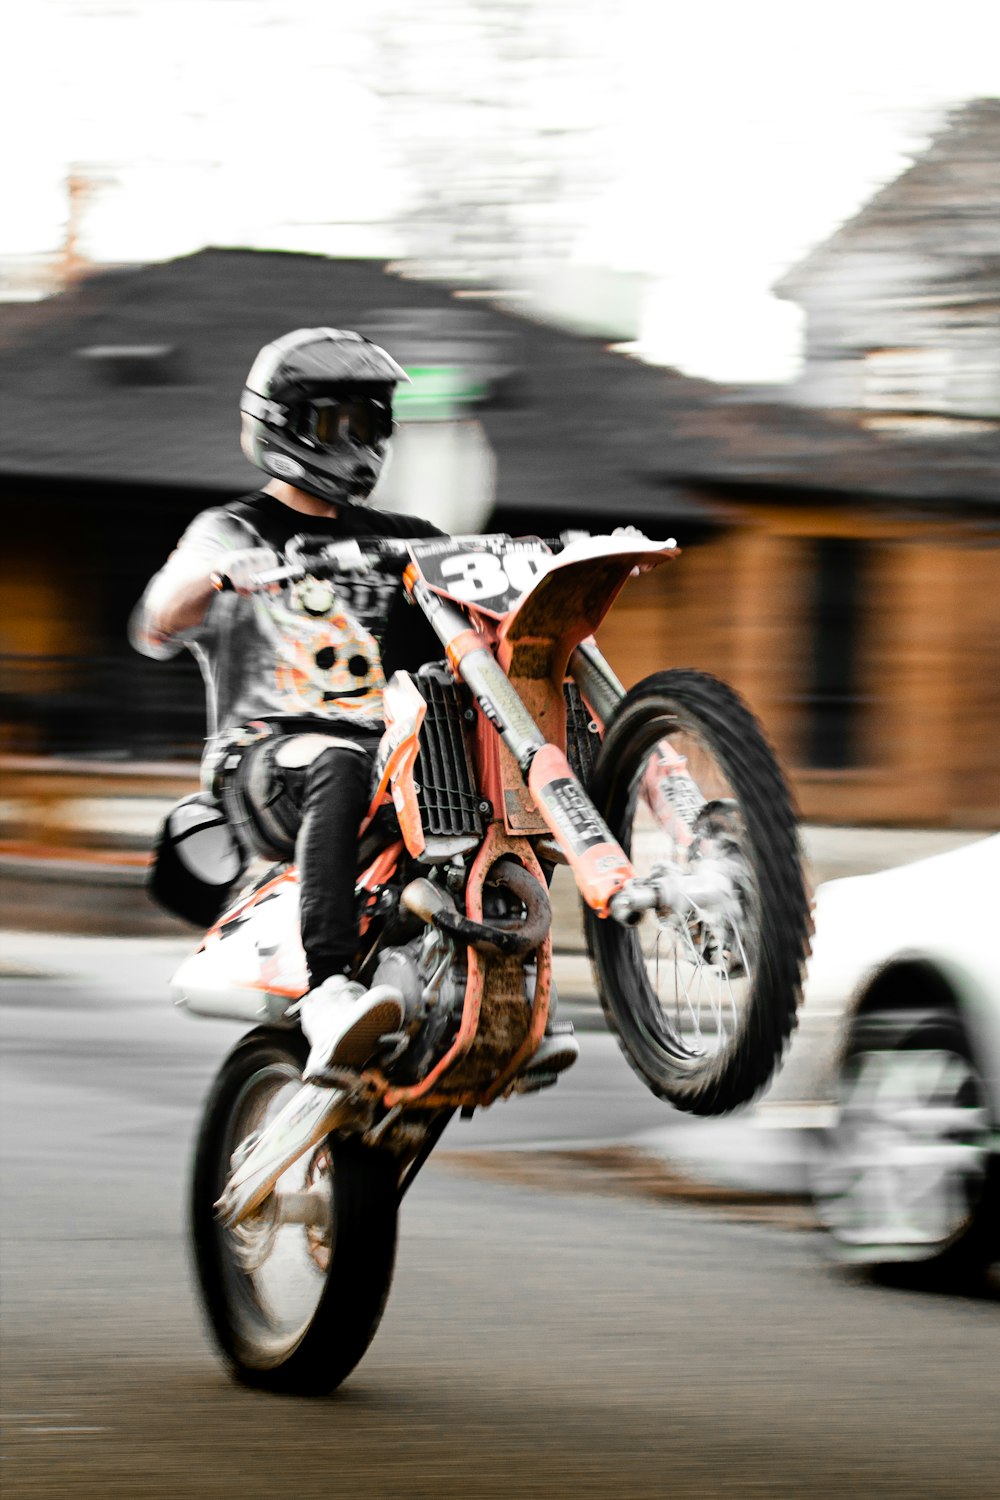 man in black helmet riding orange motorcycle